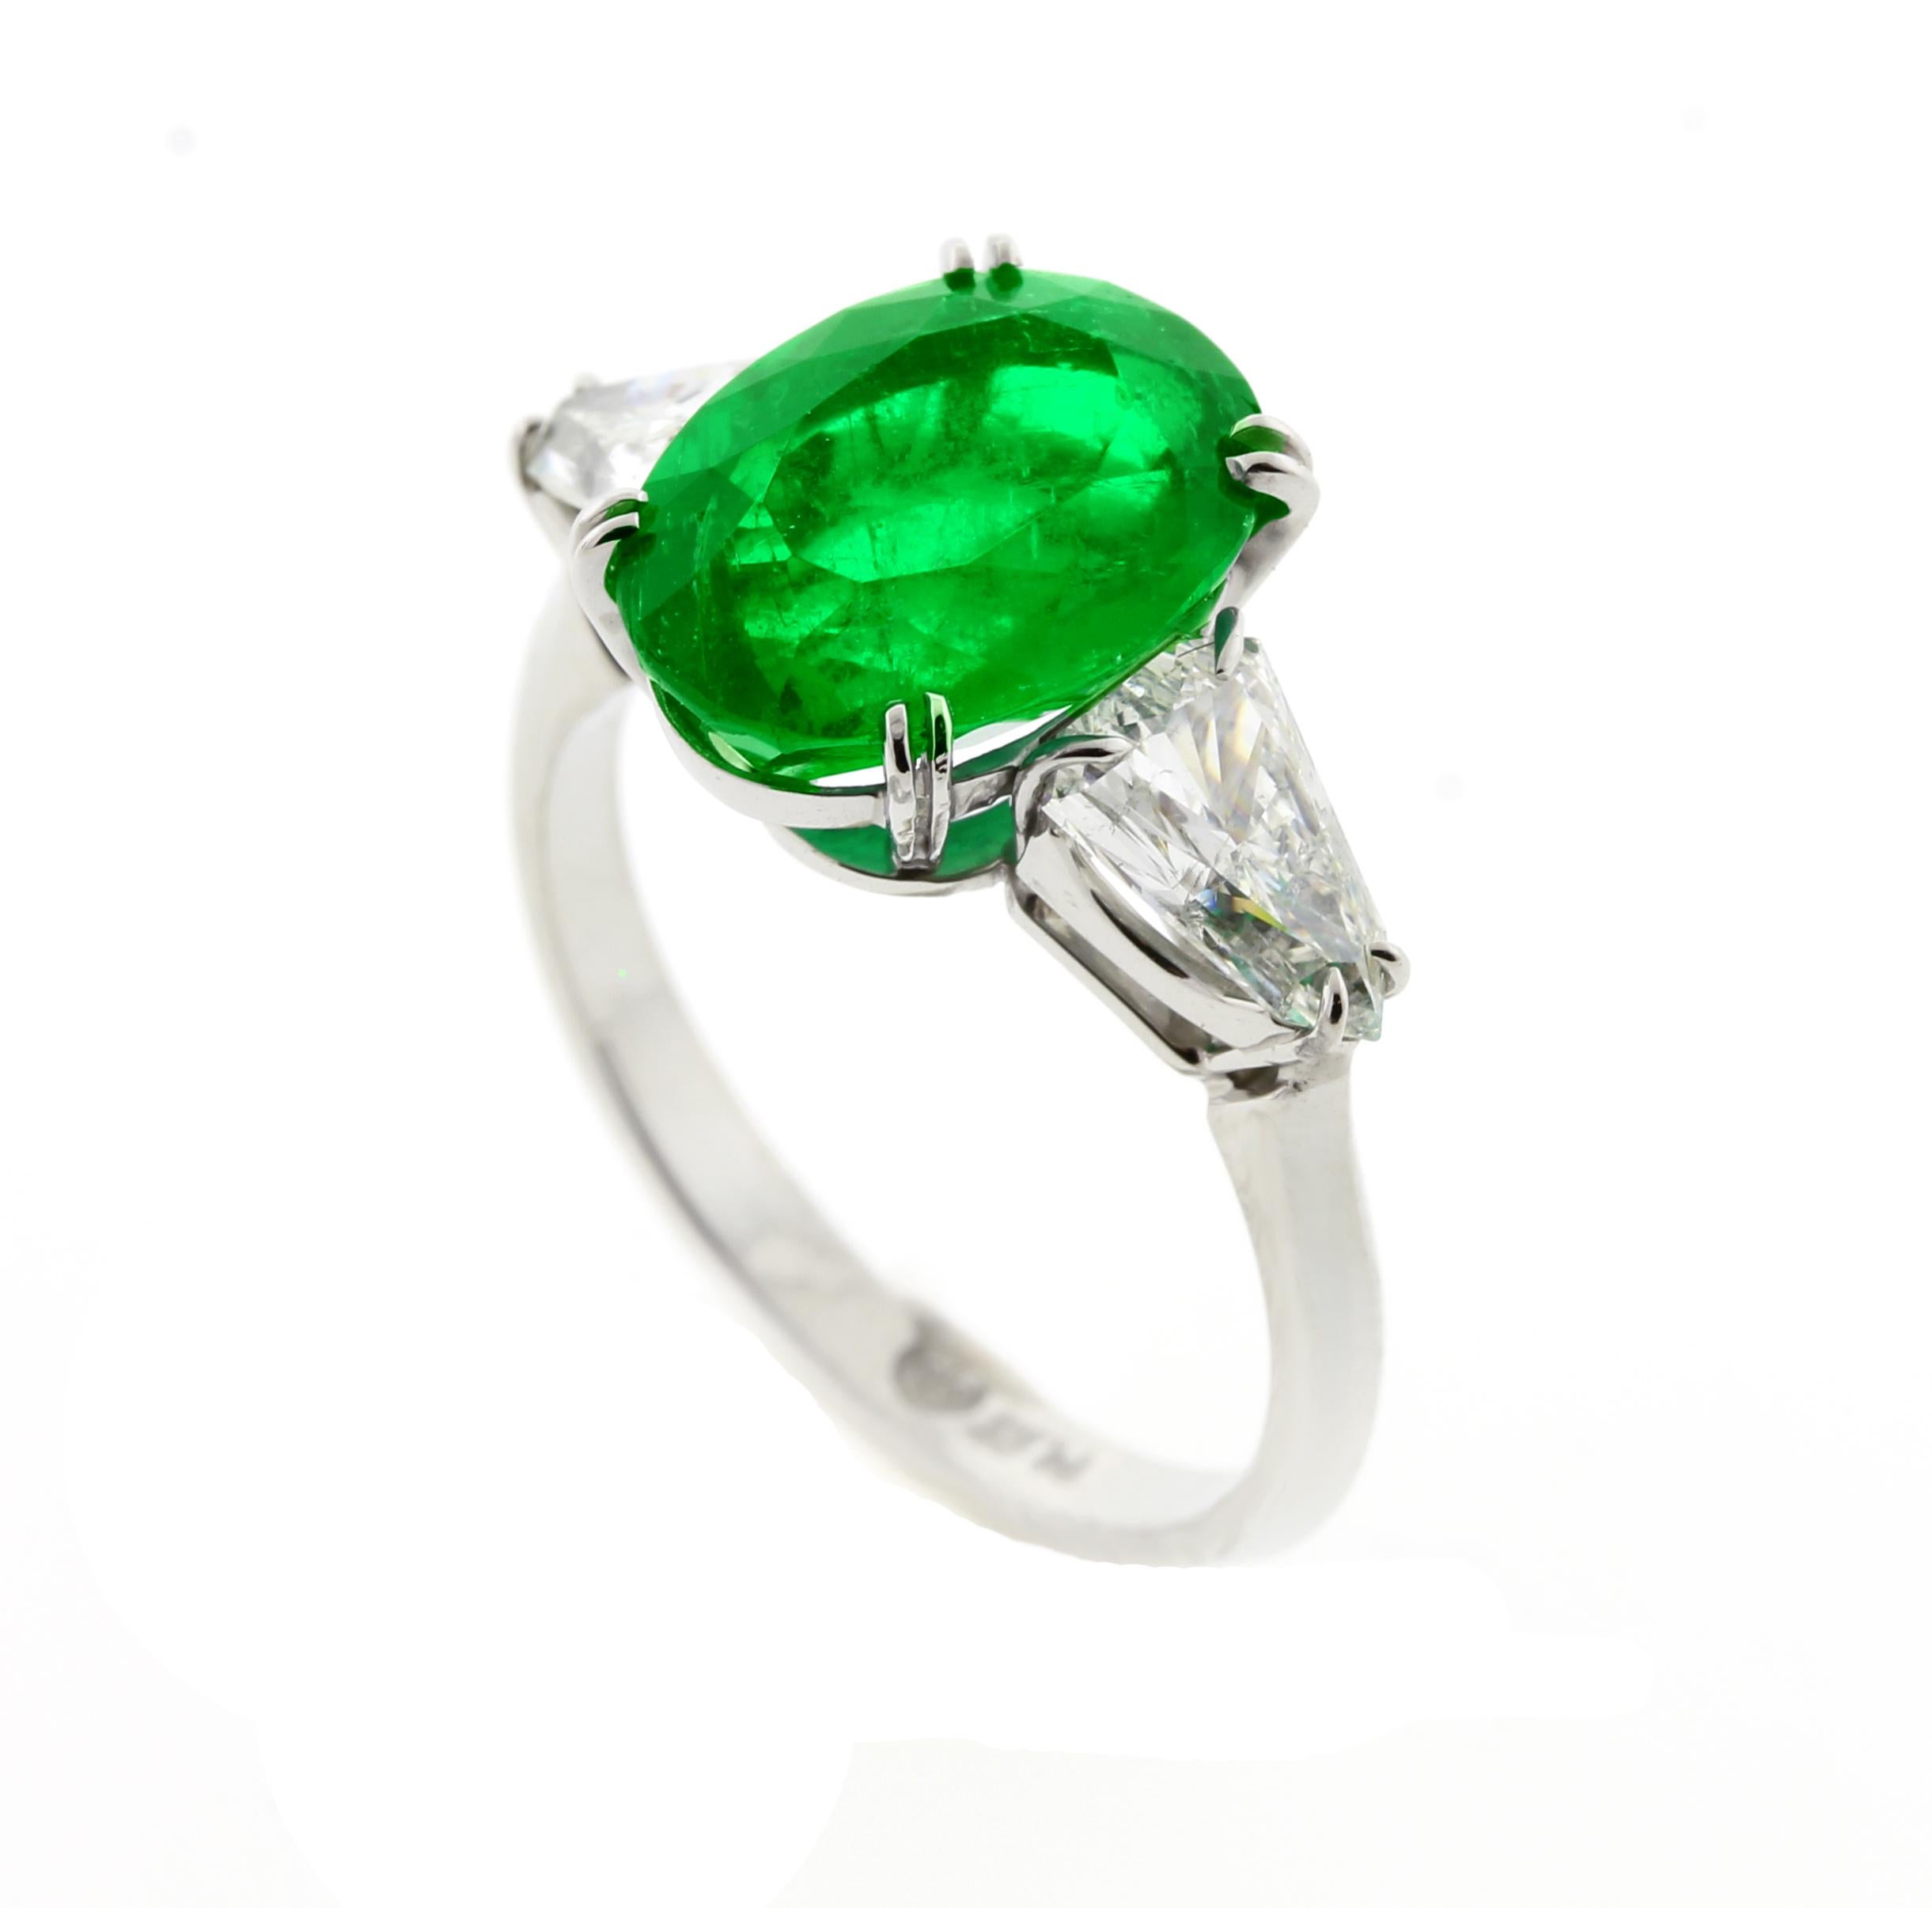 Von den Meisterringmachern von Pampillonia Jewelers stammt dieser zertifizierte ovale Smaragd mit Schildschliff  handgefertigter Diamantring.  A.G.L. hat bescheinigt, dass der Smaragd aus Kolumbien stammt und nur geringfügige (seltene) Veredelungen